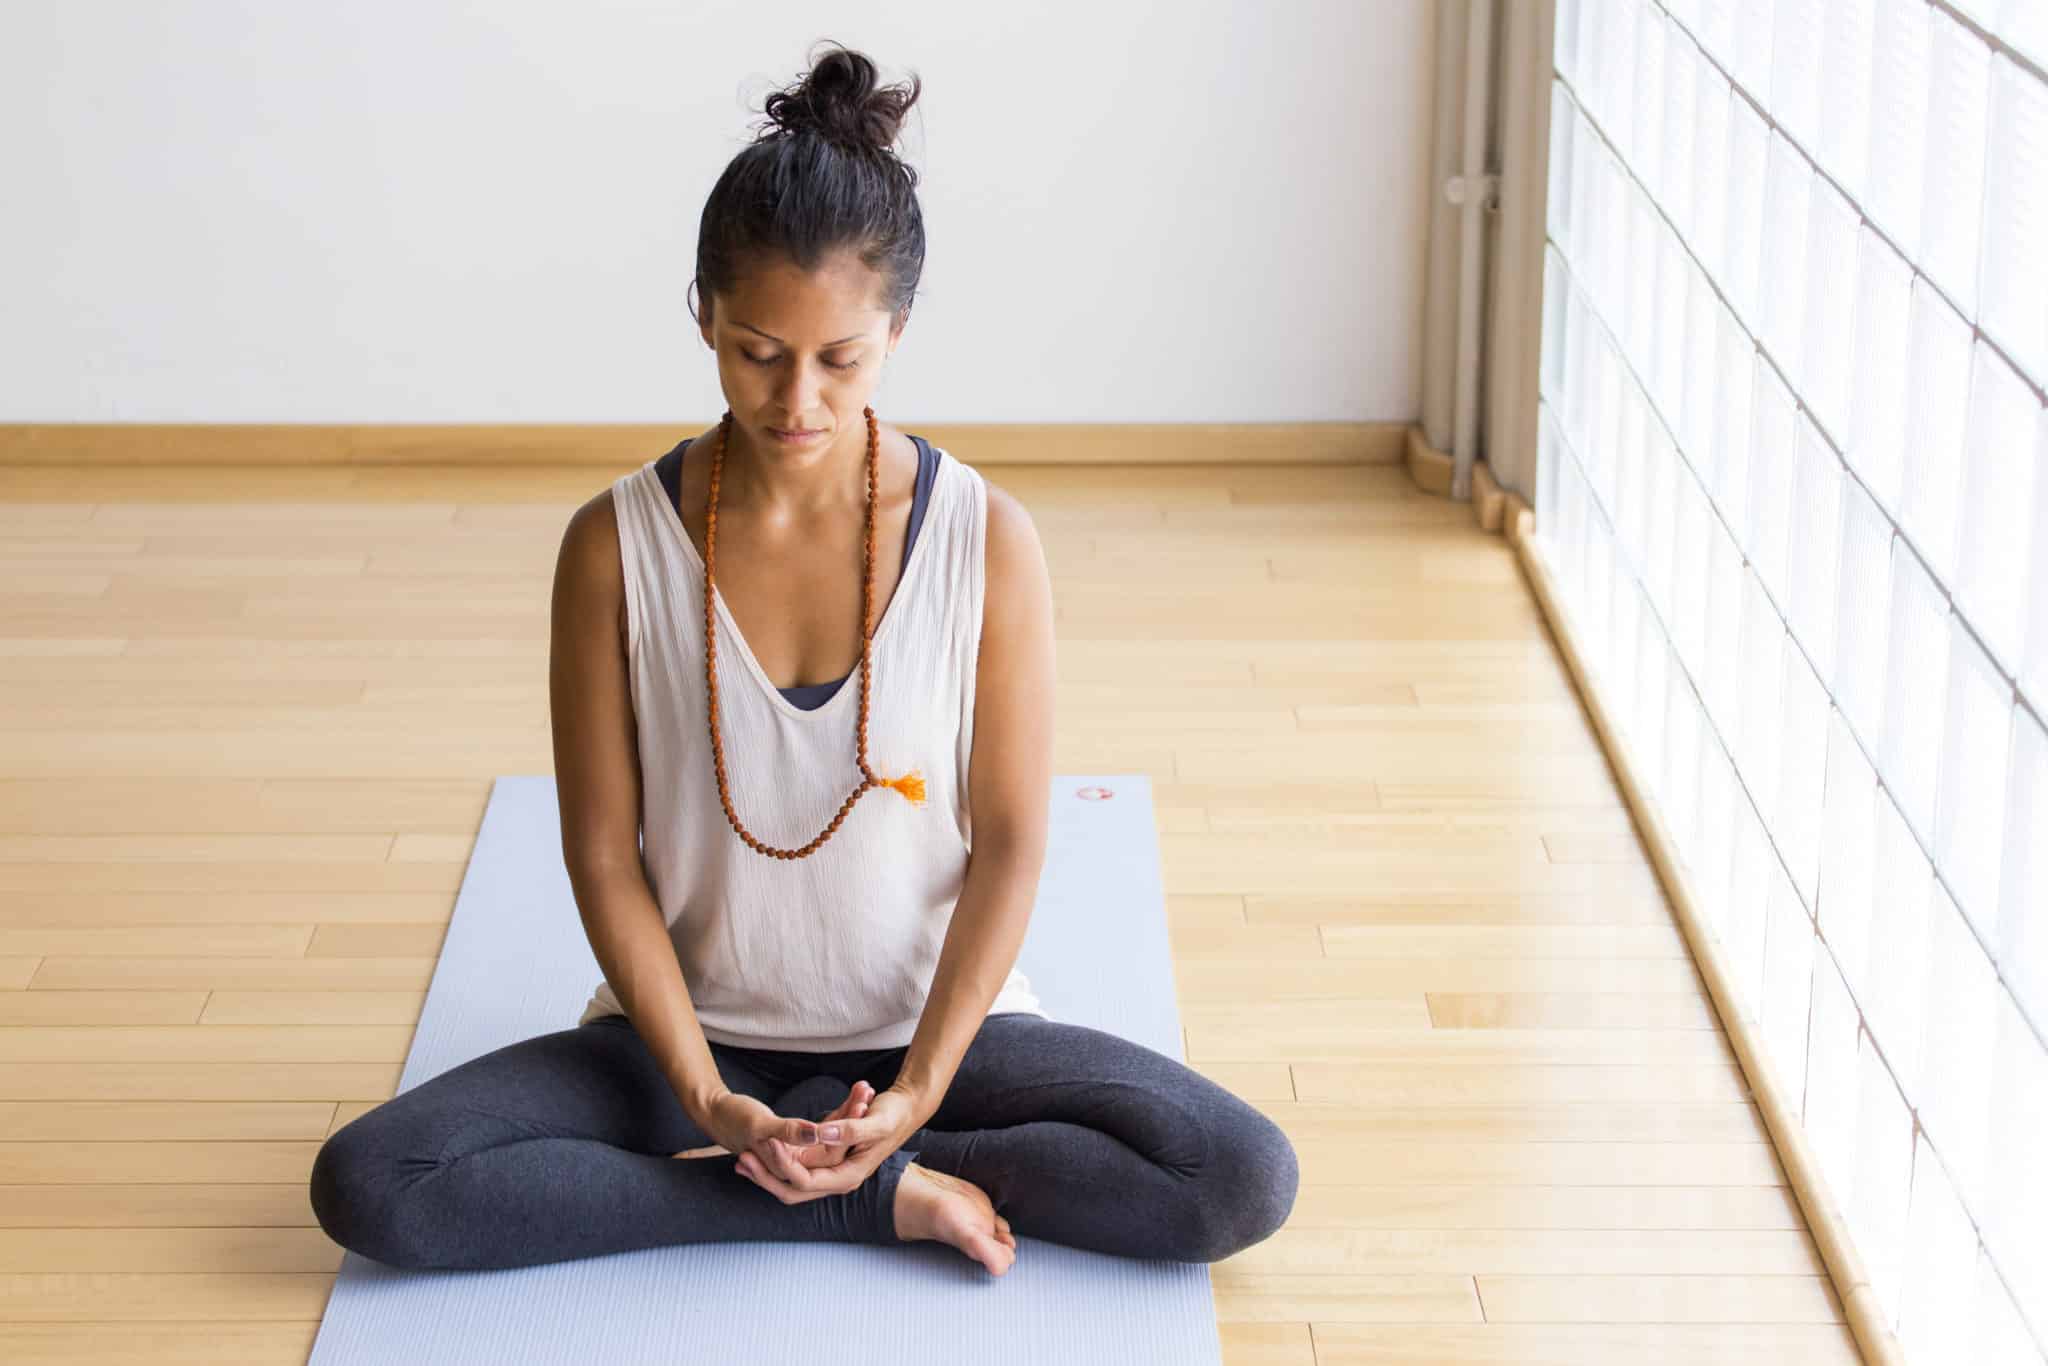 Опасность медитации - польза и вред, негативные эффекты практики для тела и психики